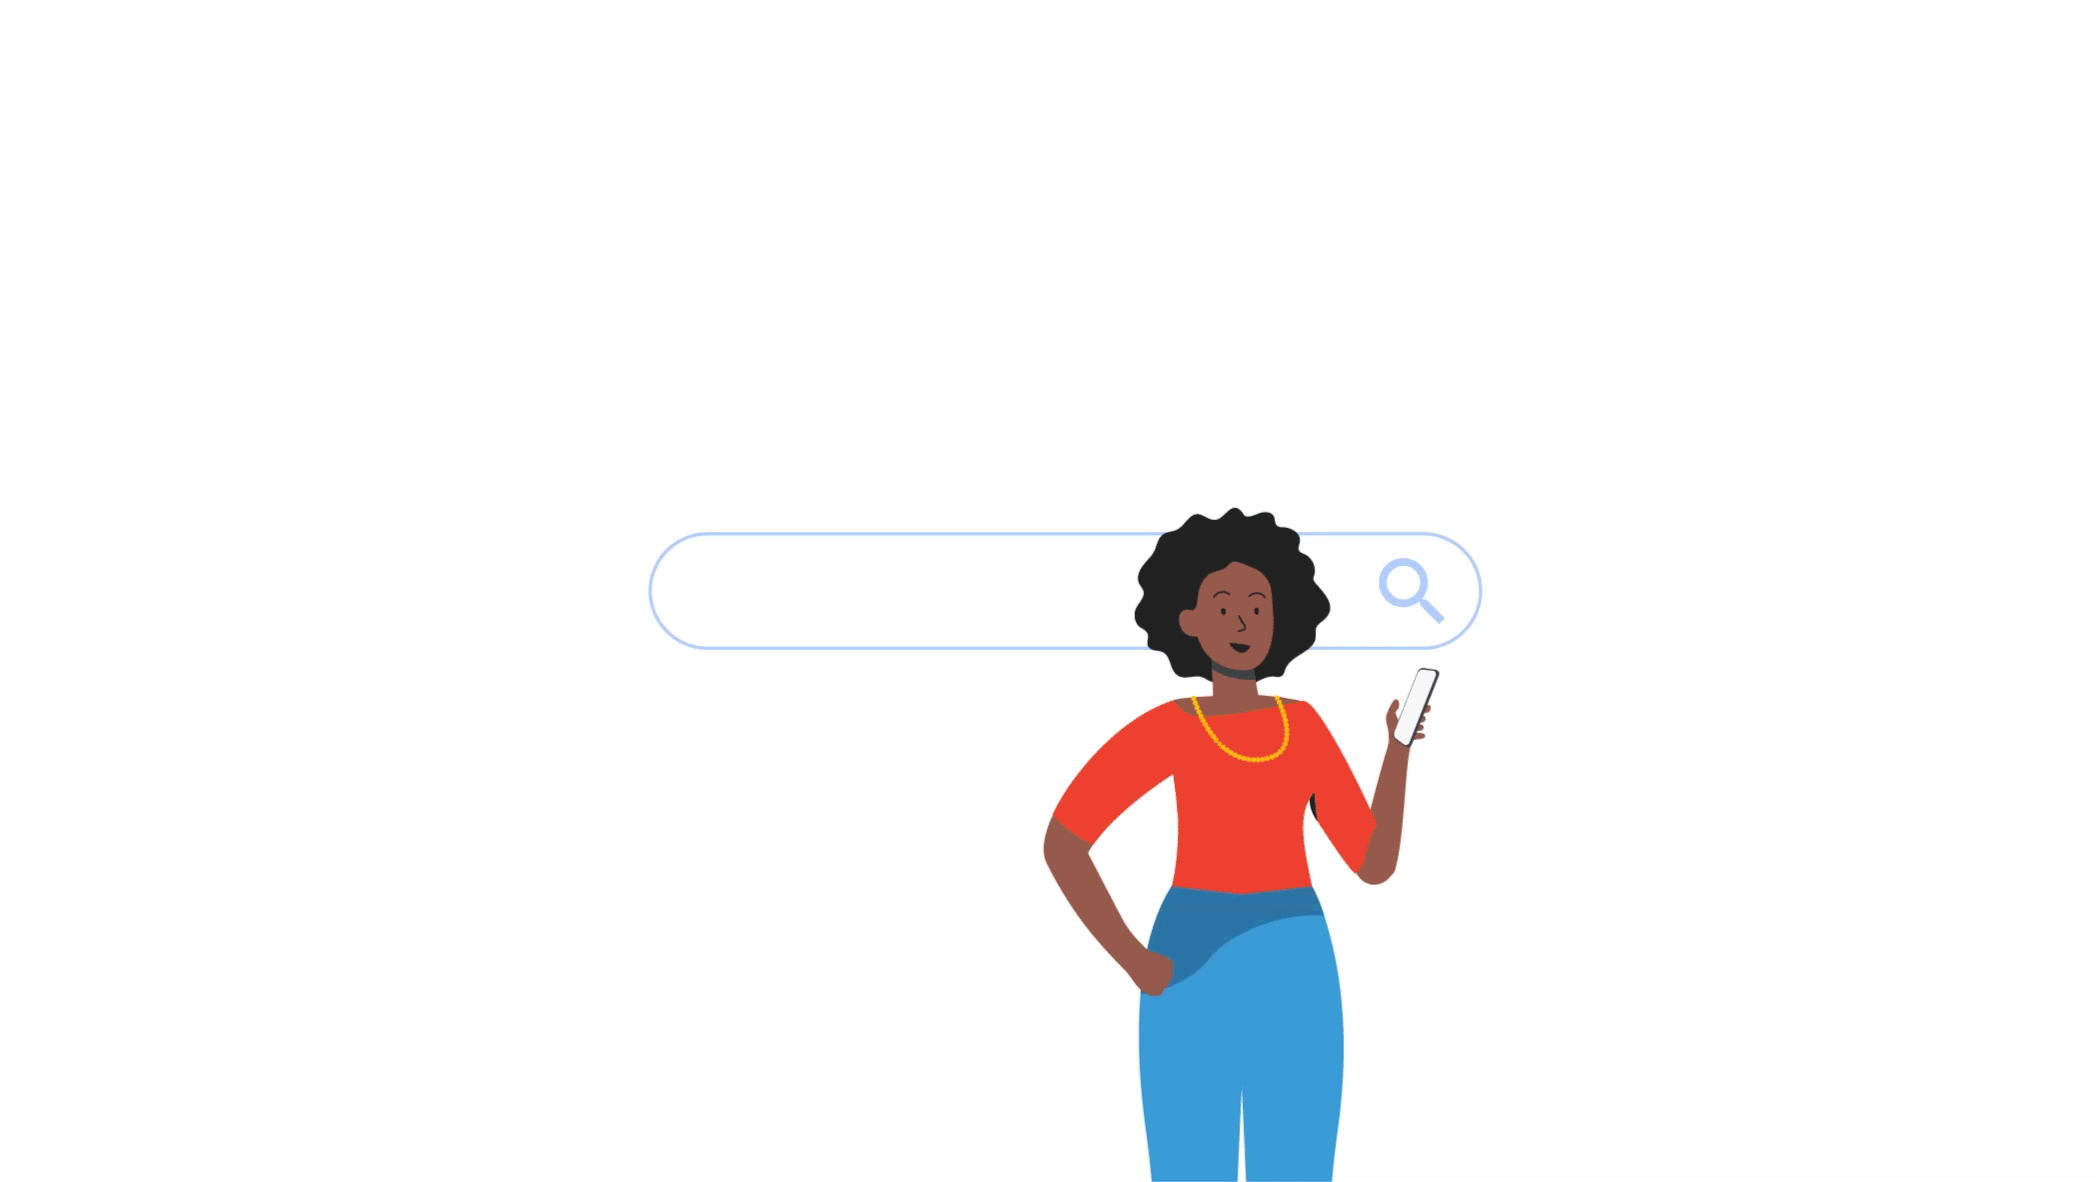 Imagem de um gif ilustrado de pesquisa no Google com as palavras “hotéis perto de mim”, sobre uma mulher que olha o celular. Painéis mostram produtos do Google como Mapas, YouTube e Gmail ao redor da barra da Busca.